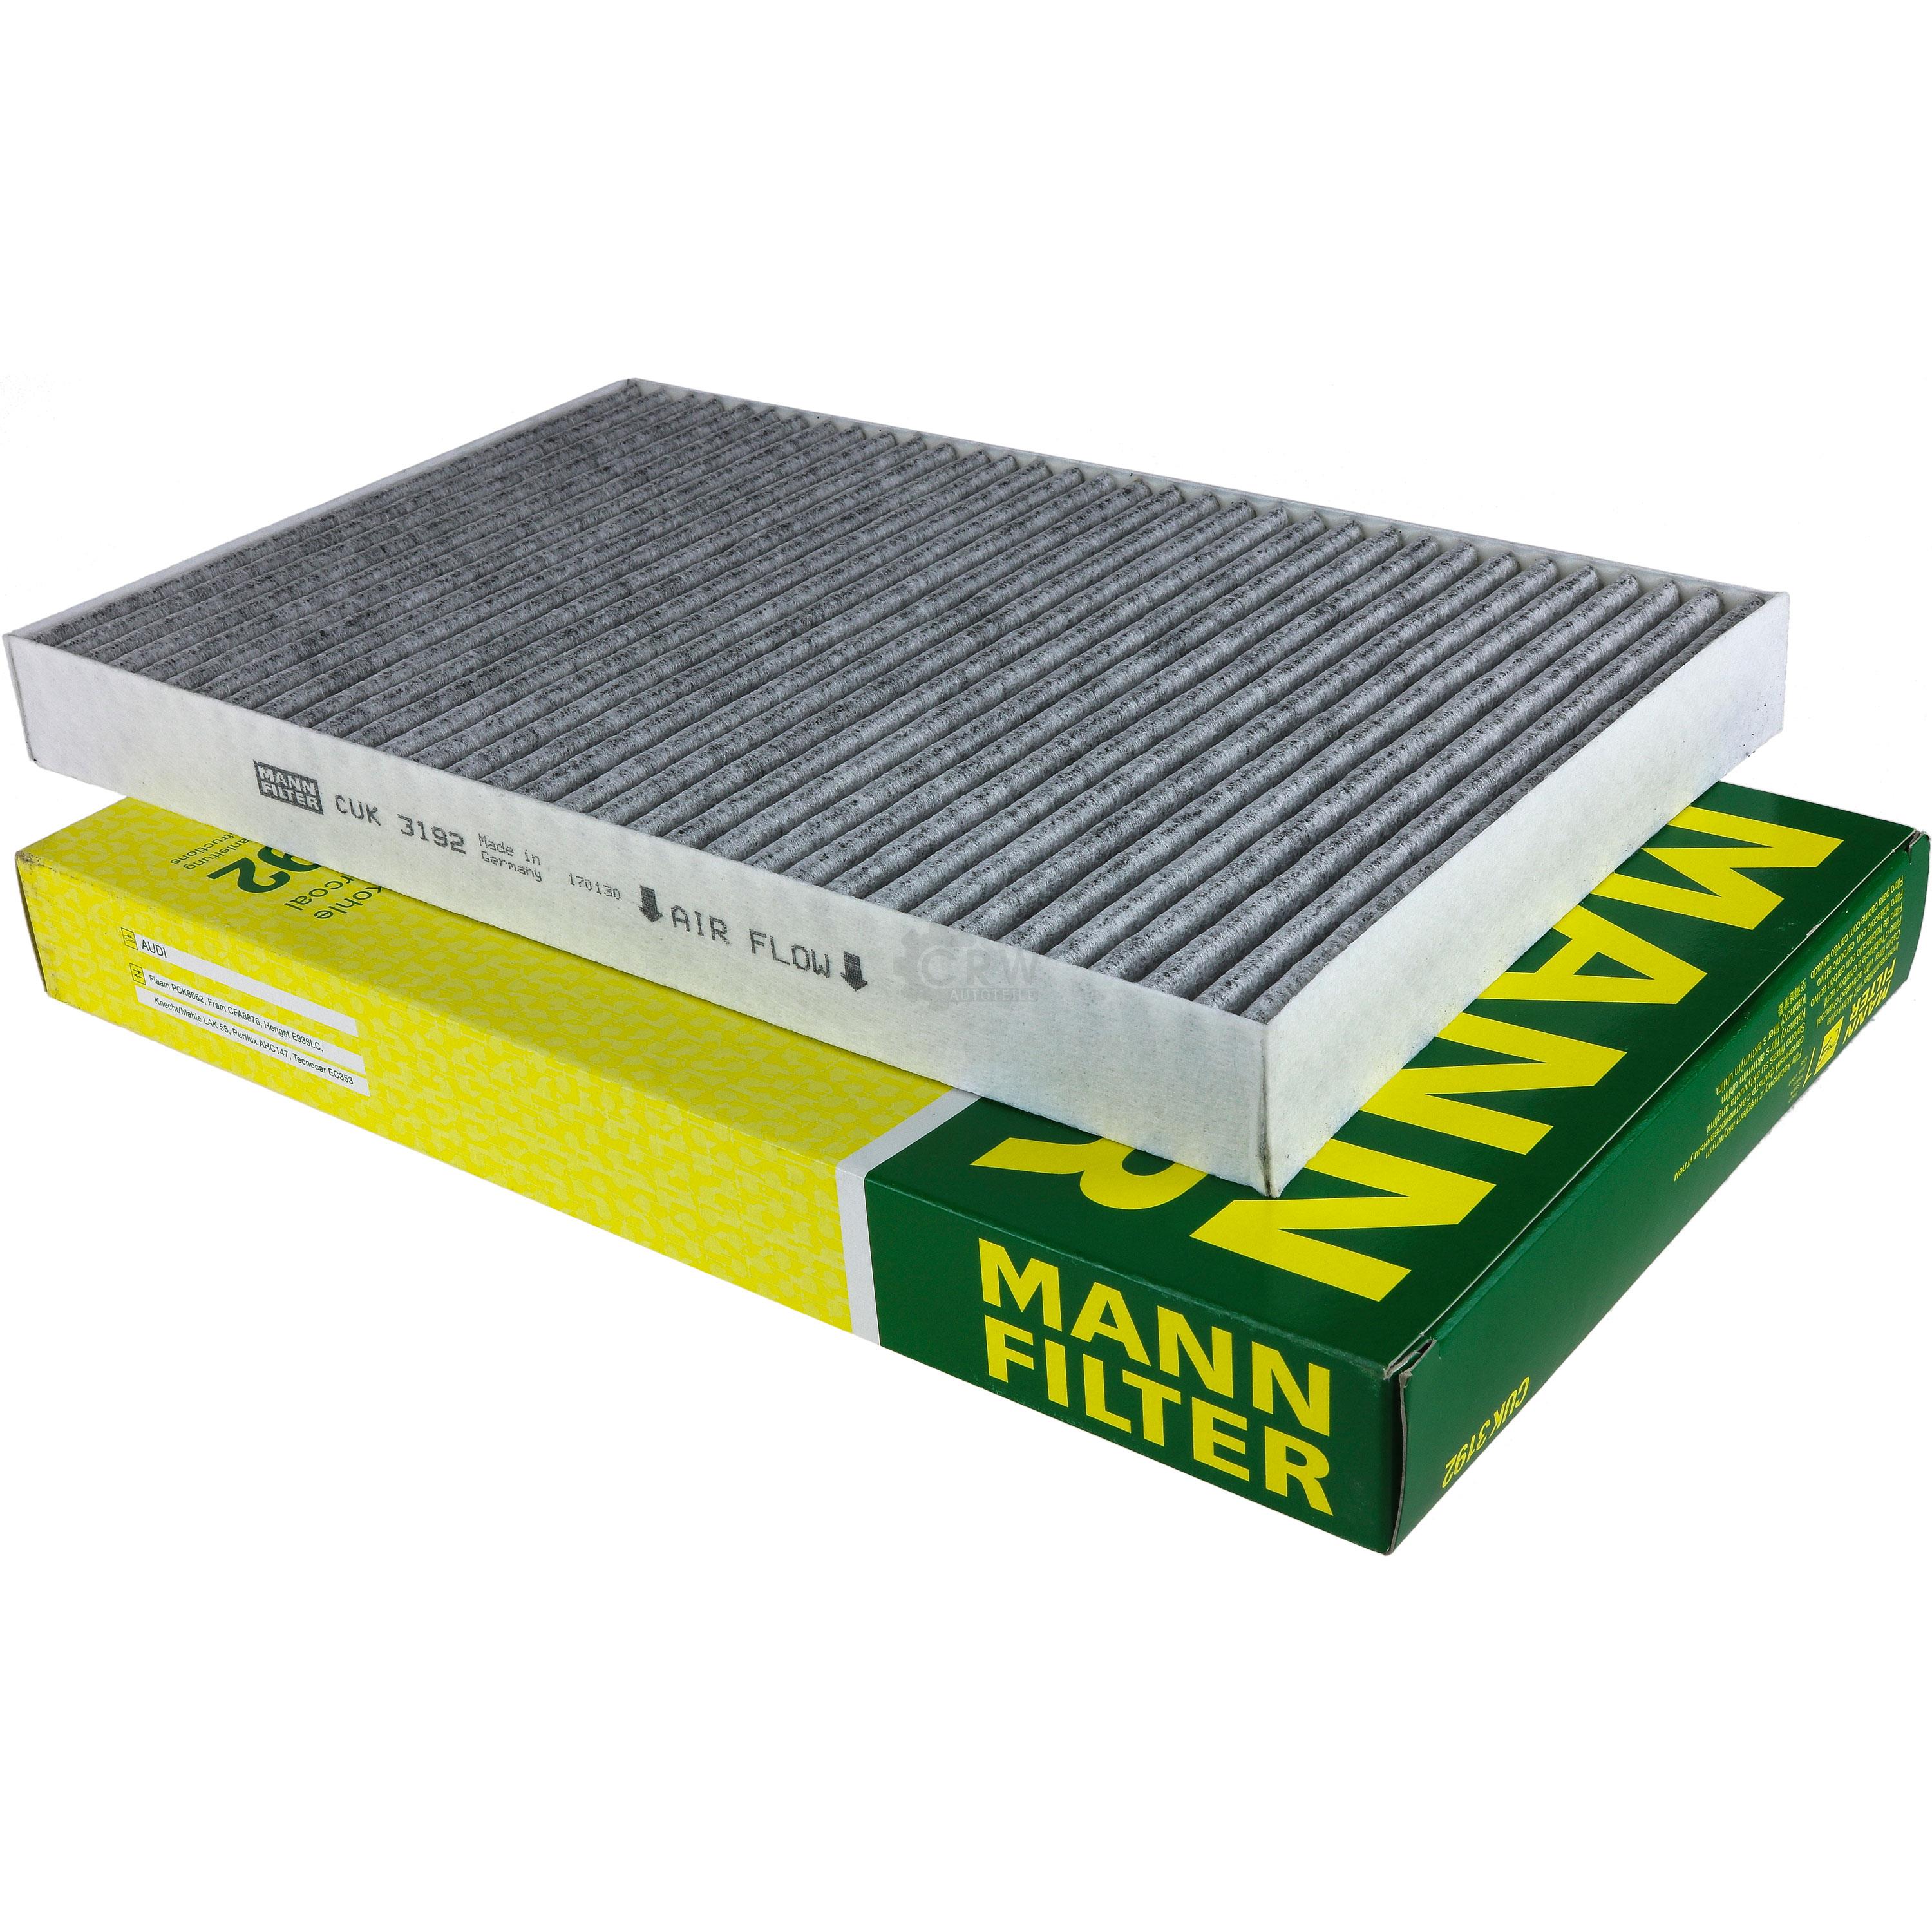 MANN-FILTER Innenraumfilter Pollenfilter Aktivkohle CUK 3192